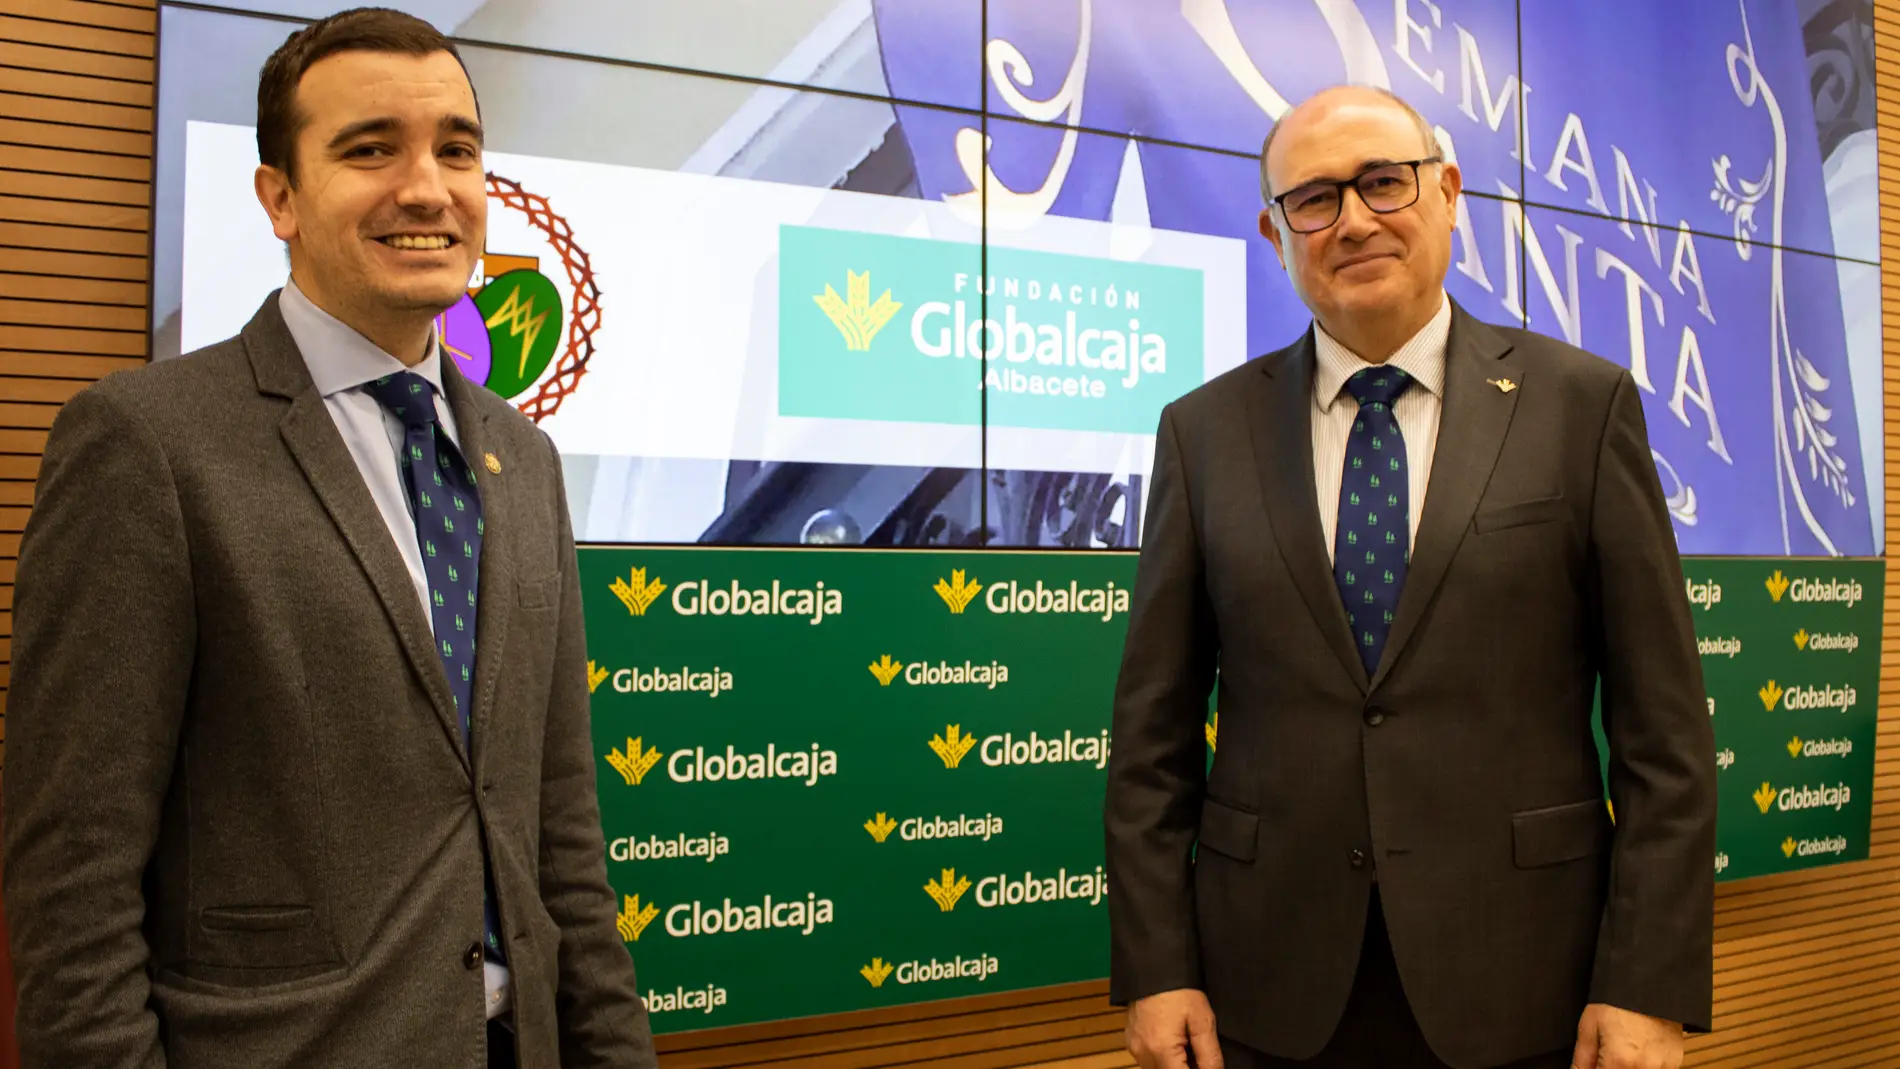 La Semana Santa de Albacete recibe el respaldo de la Fundación Globalcaja